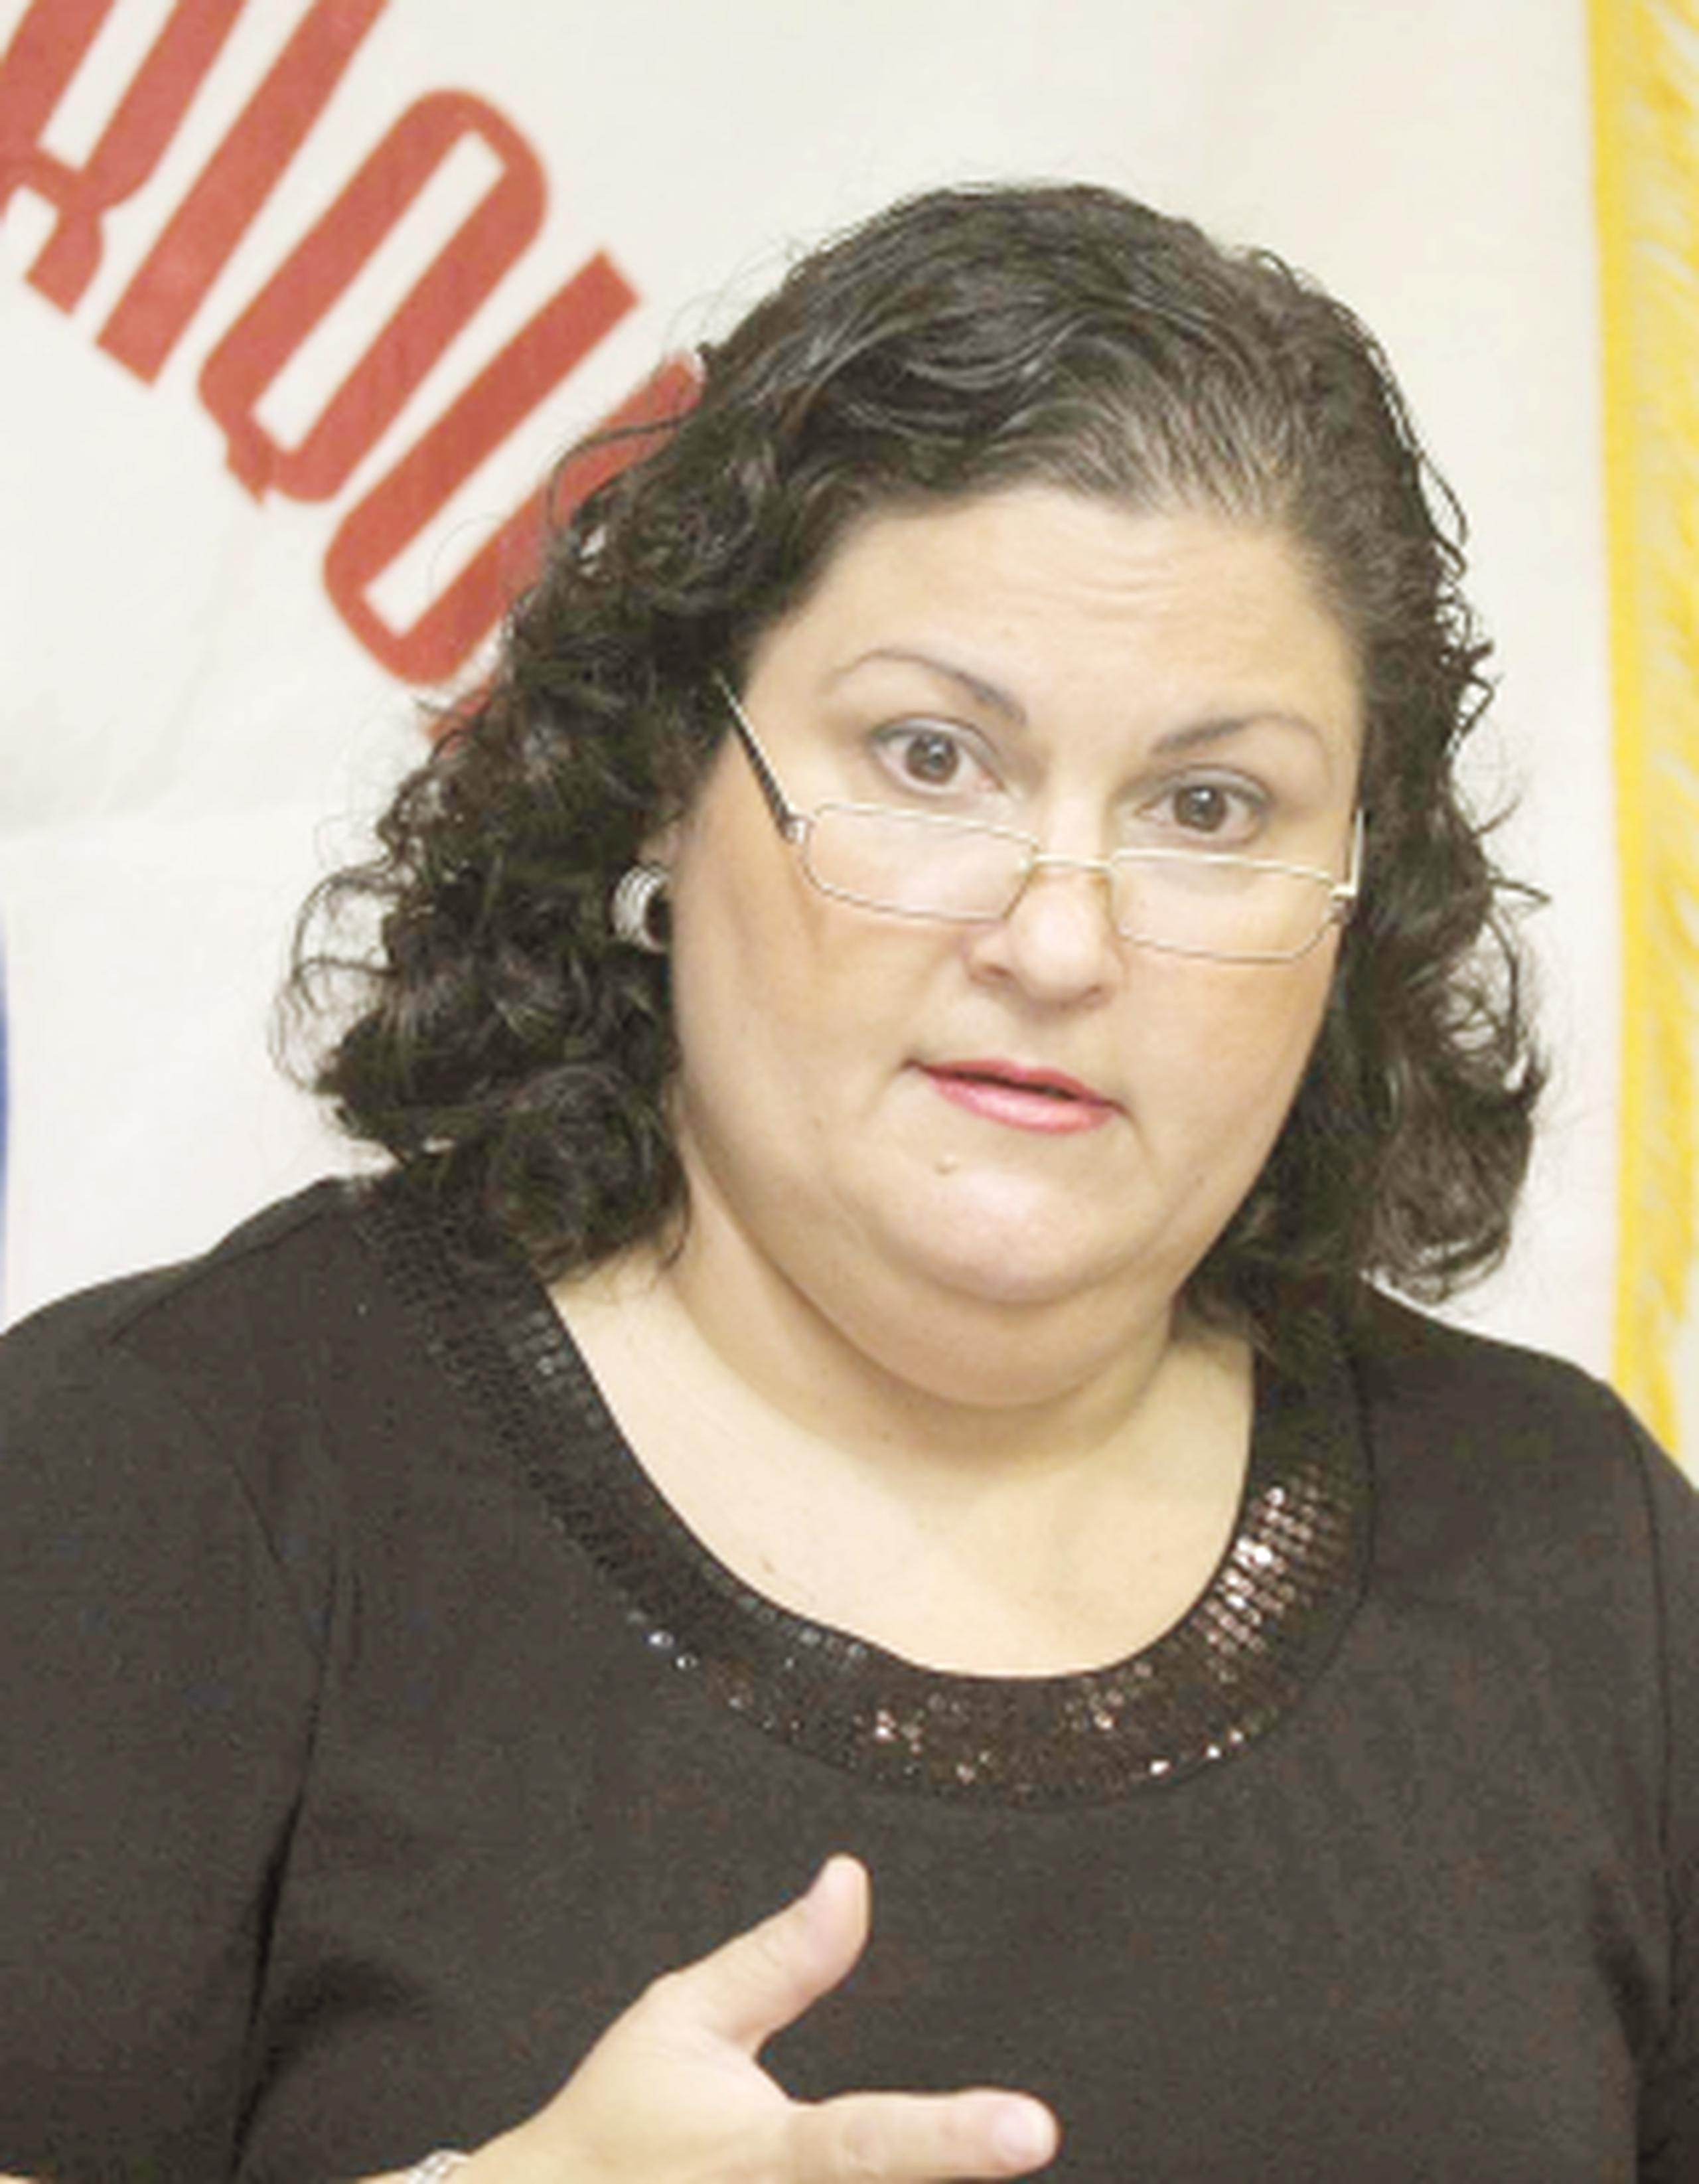 La directora y portavoz de la Alianza de Autismo, Joyce Dávila, reclamó que las agencias solo envían representantes para decir que no tienen presupuesto para hacer cumplir las leyes. (Archivo)